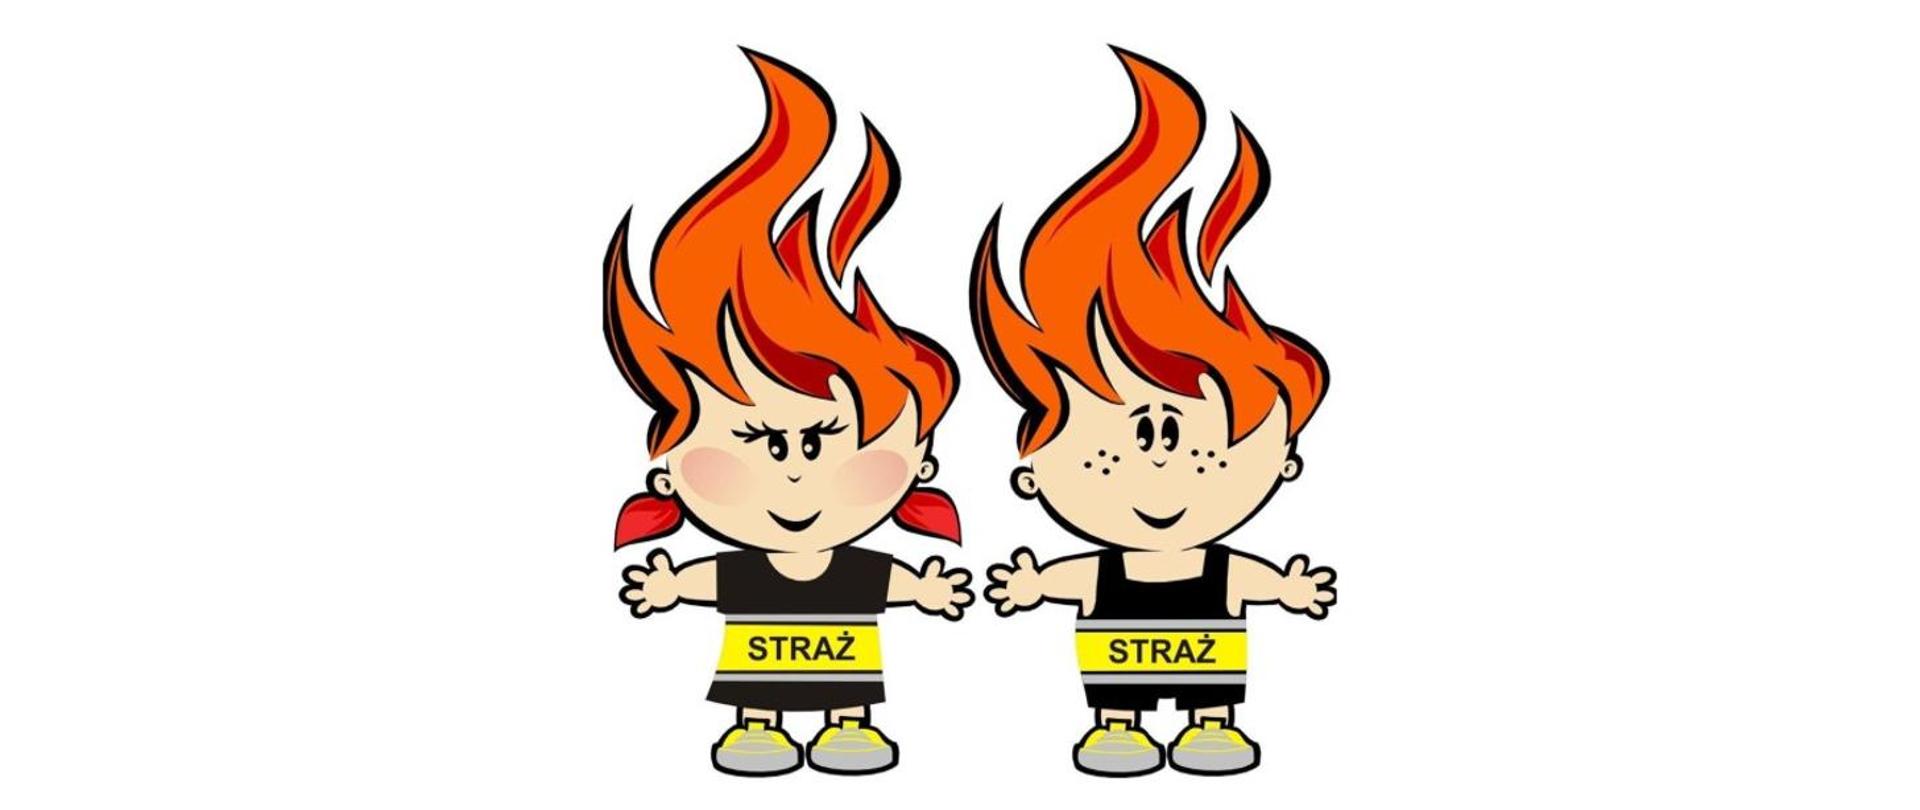 Grafika przedstawia postać chłopca i dziewczynki w ubraniach z napisem straż. Fryzury przedstawionych postaci przypomina płomień.